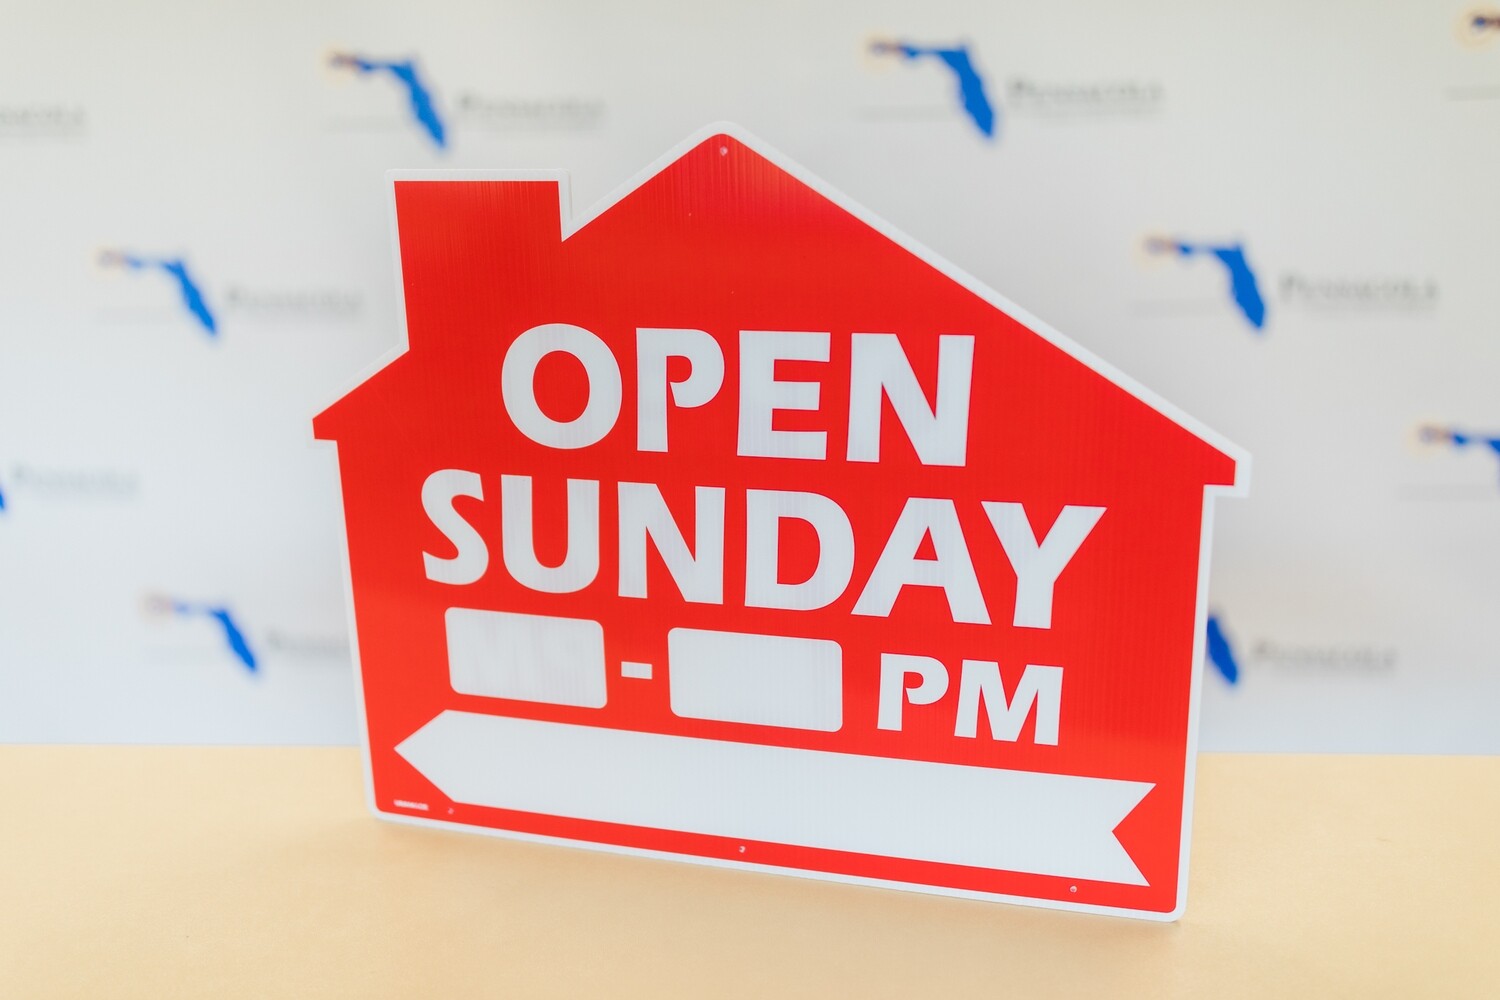 OPEN SUNDAY HOUSE W/ TIME & ARROW